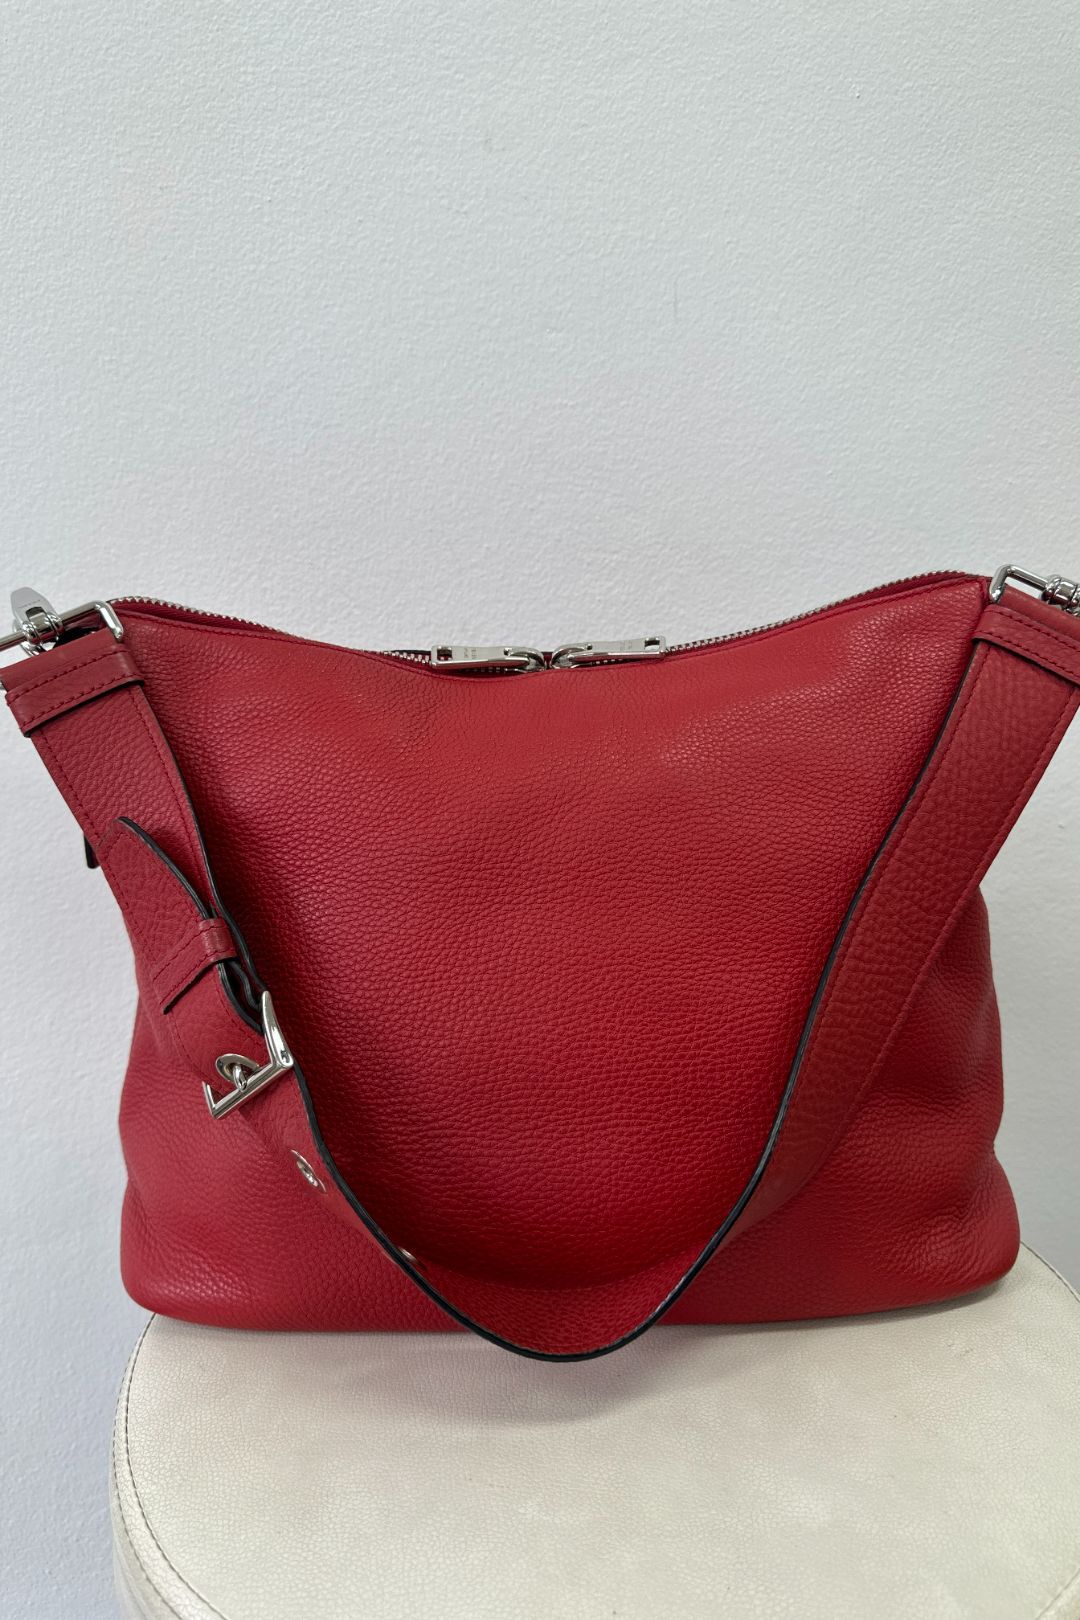 Prada Red Leather Hobo Bag